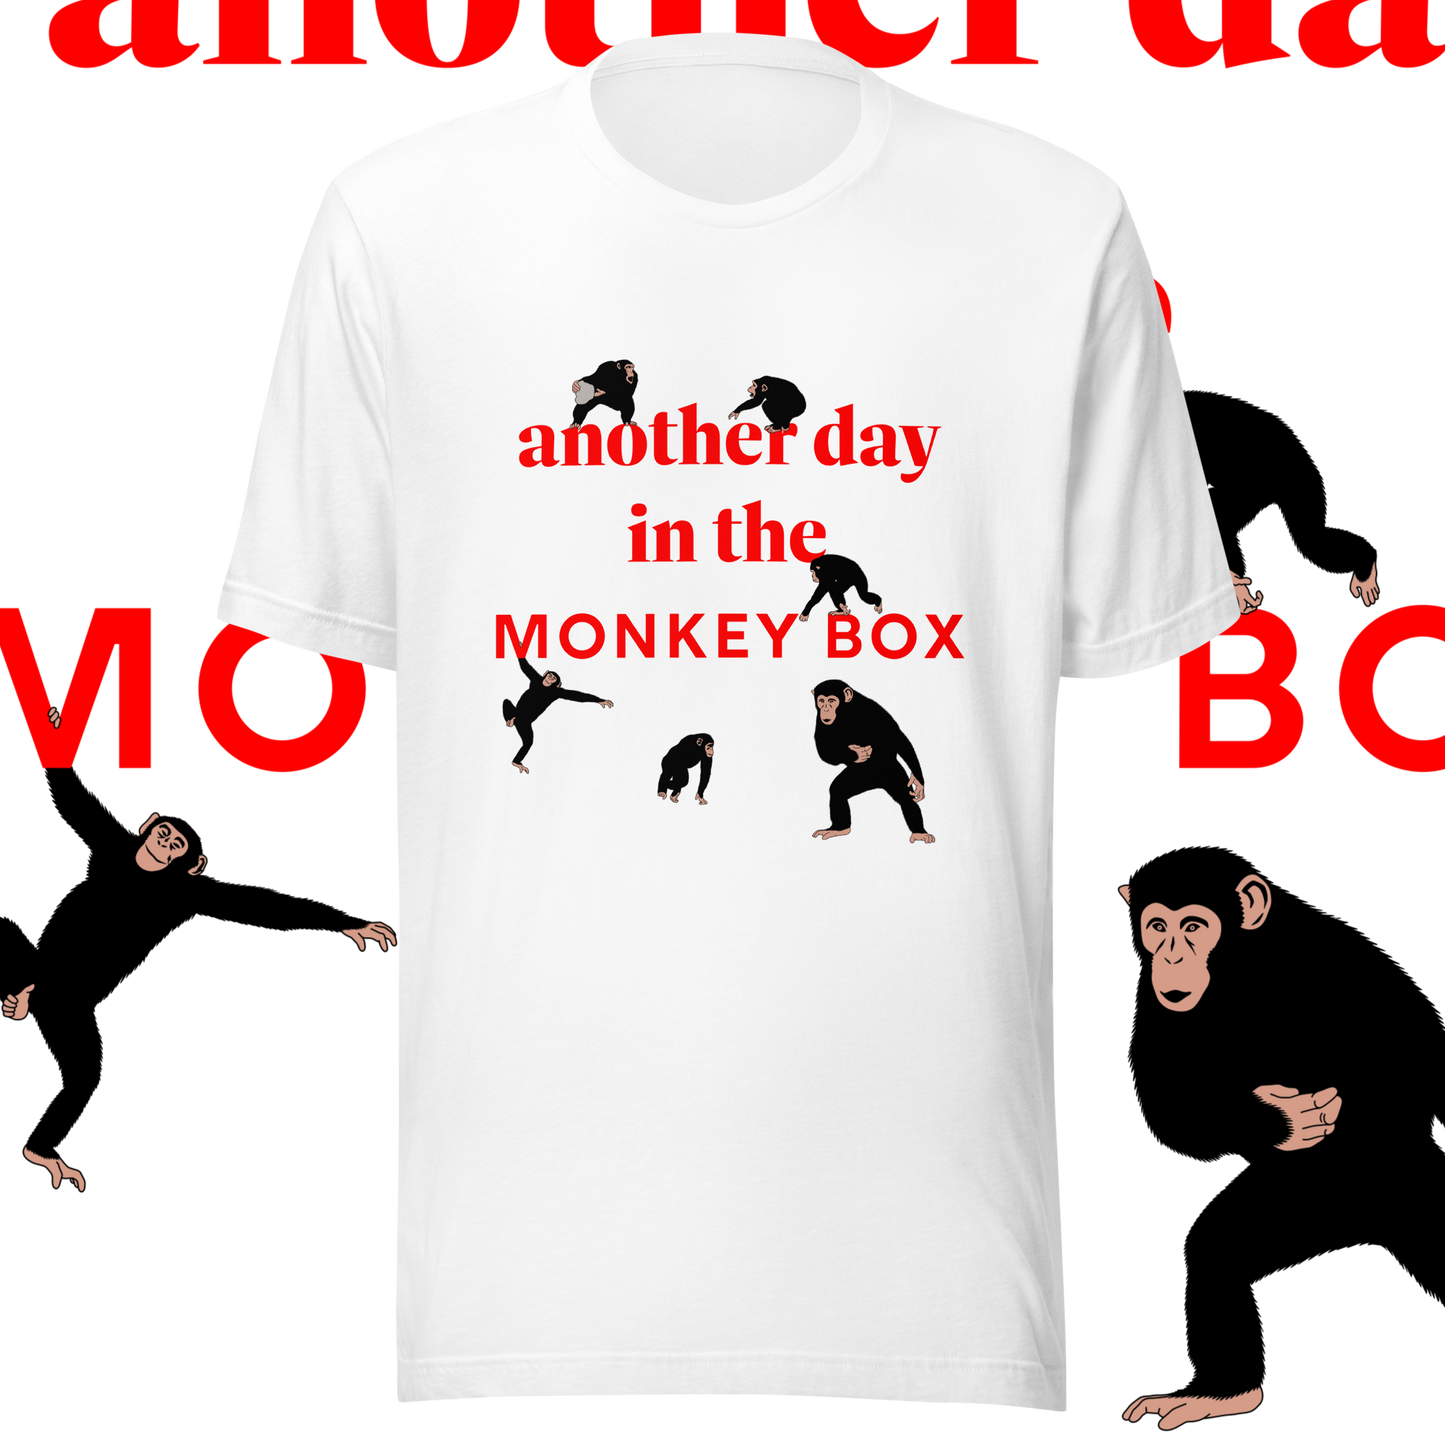 Monkey Box Tee